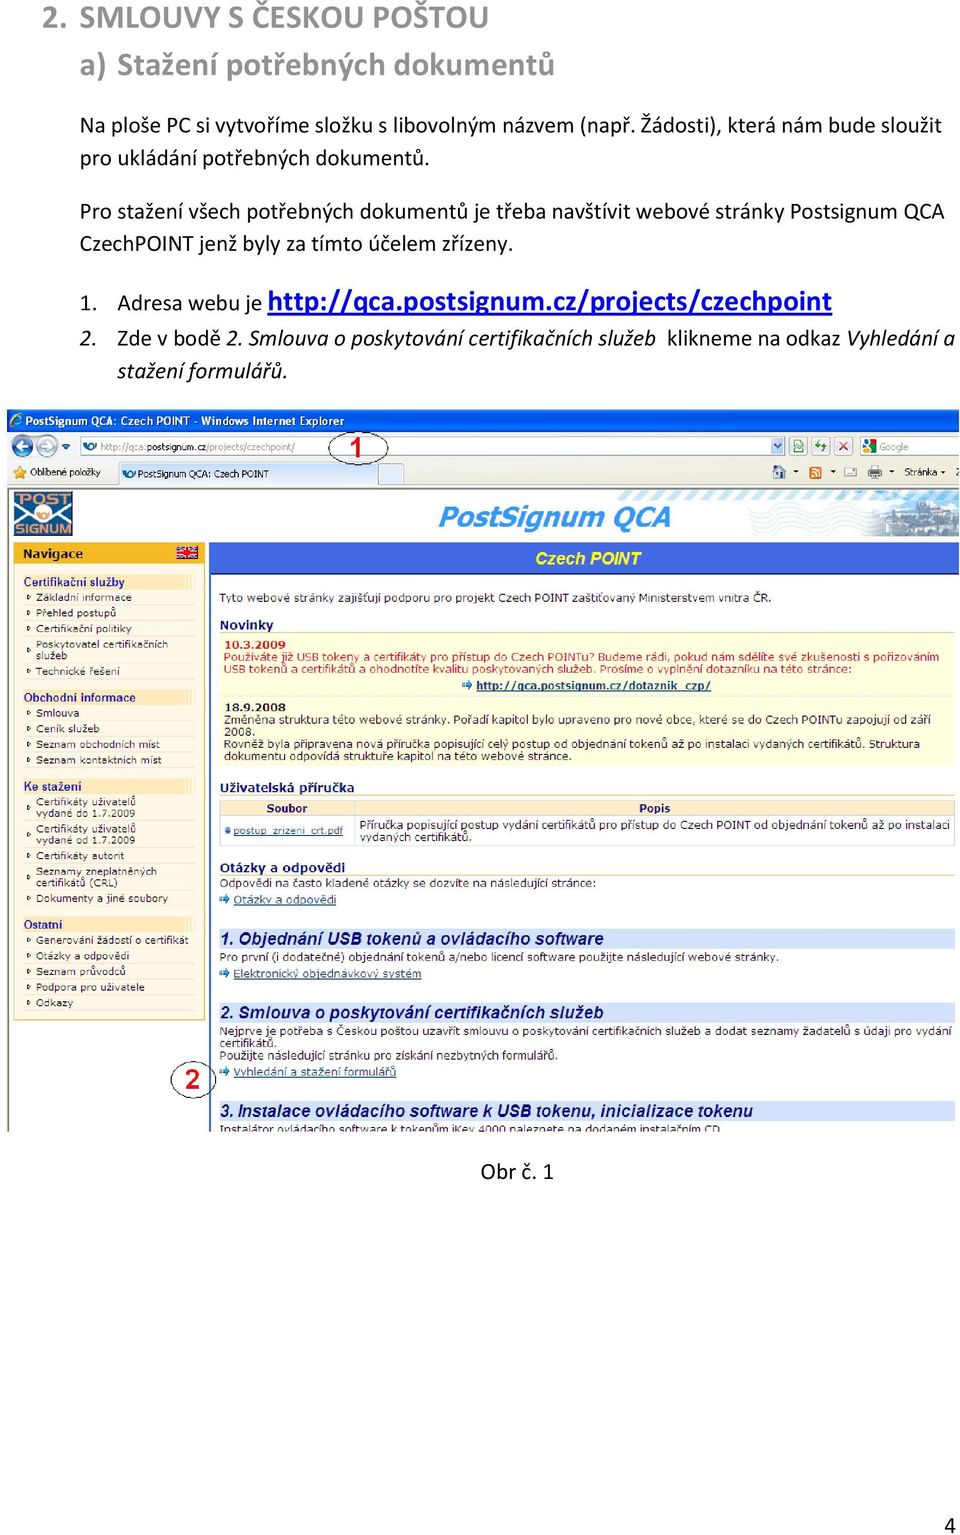 Pro stažení všech potřebných dokumentů je třeba navštívit webové stránky Postsignum QCA CzechPOINT jenž byly za tímto účelem